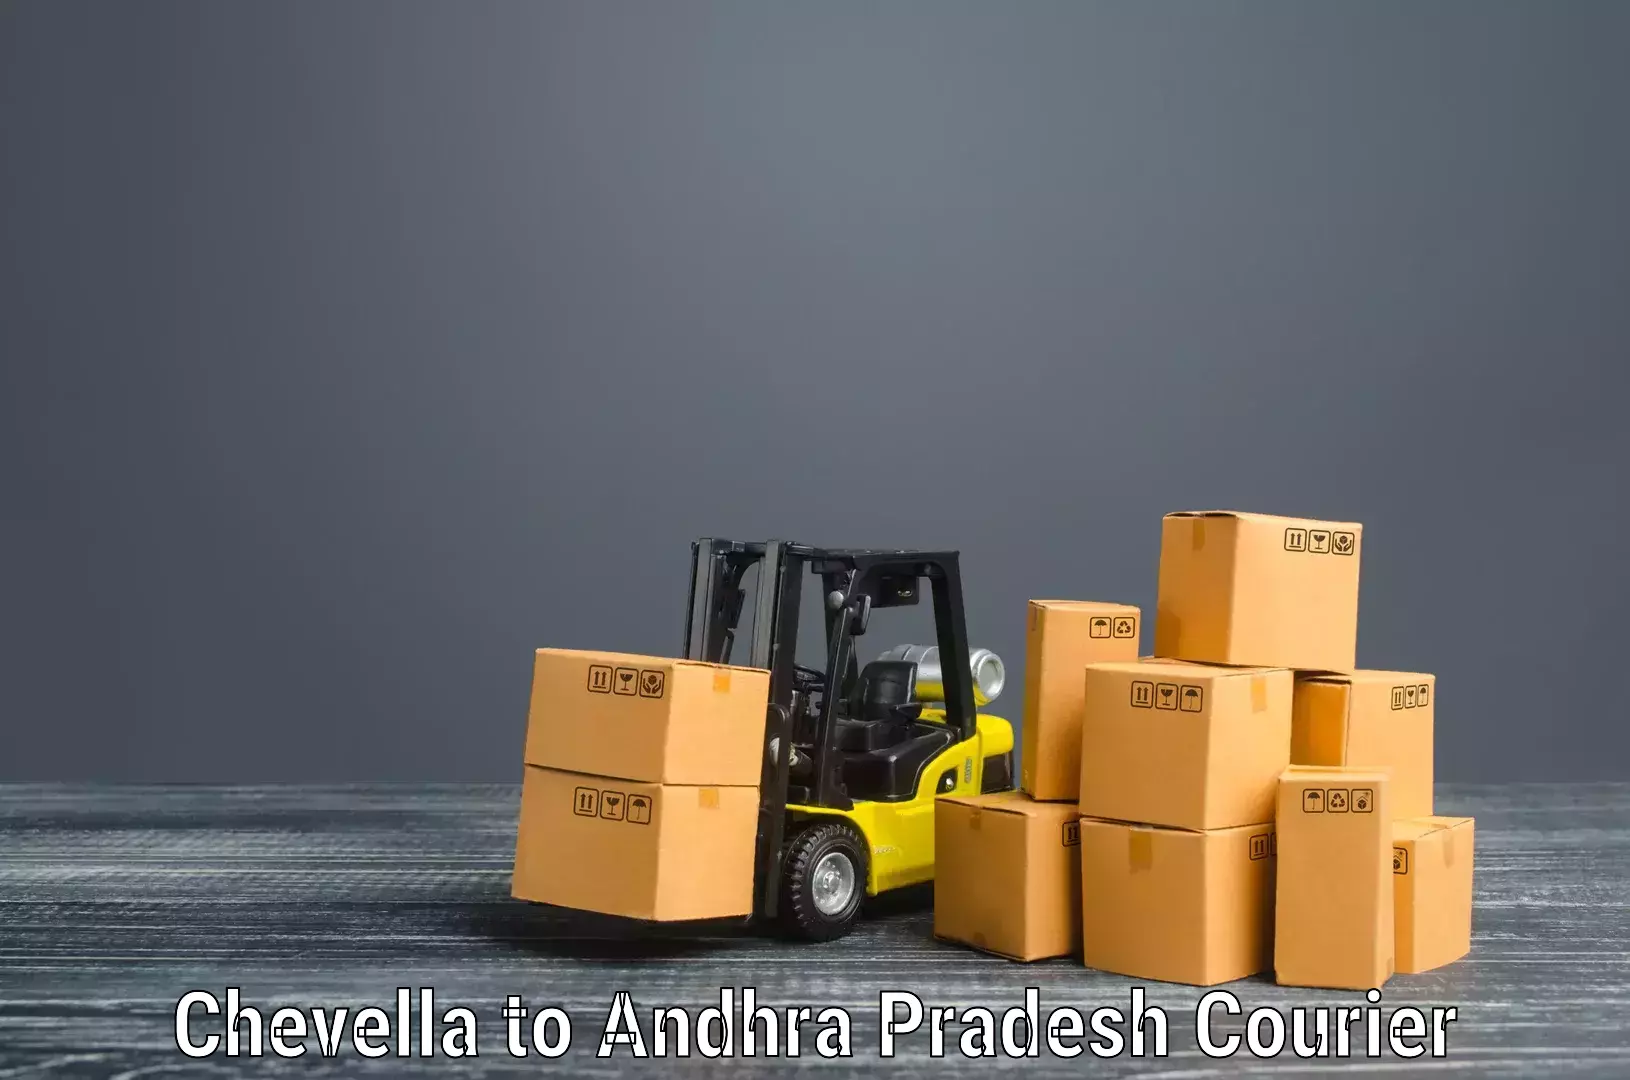 Efficient moving company Chevella to Movva